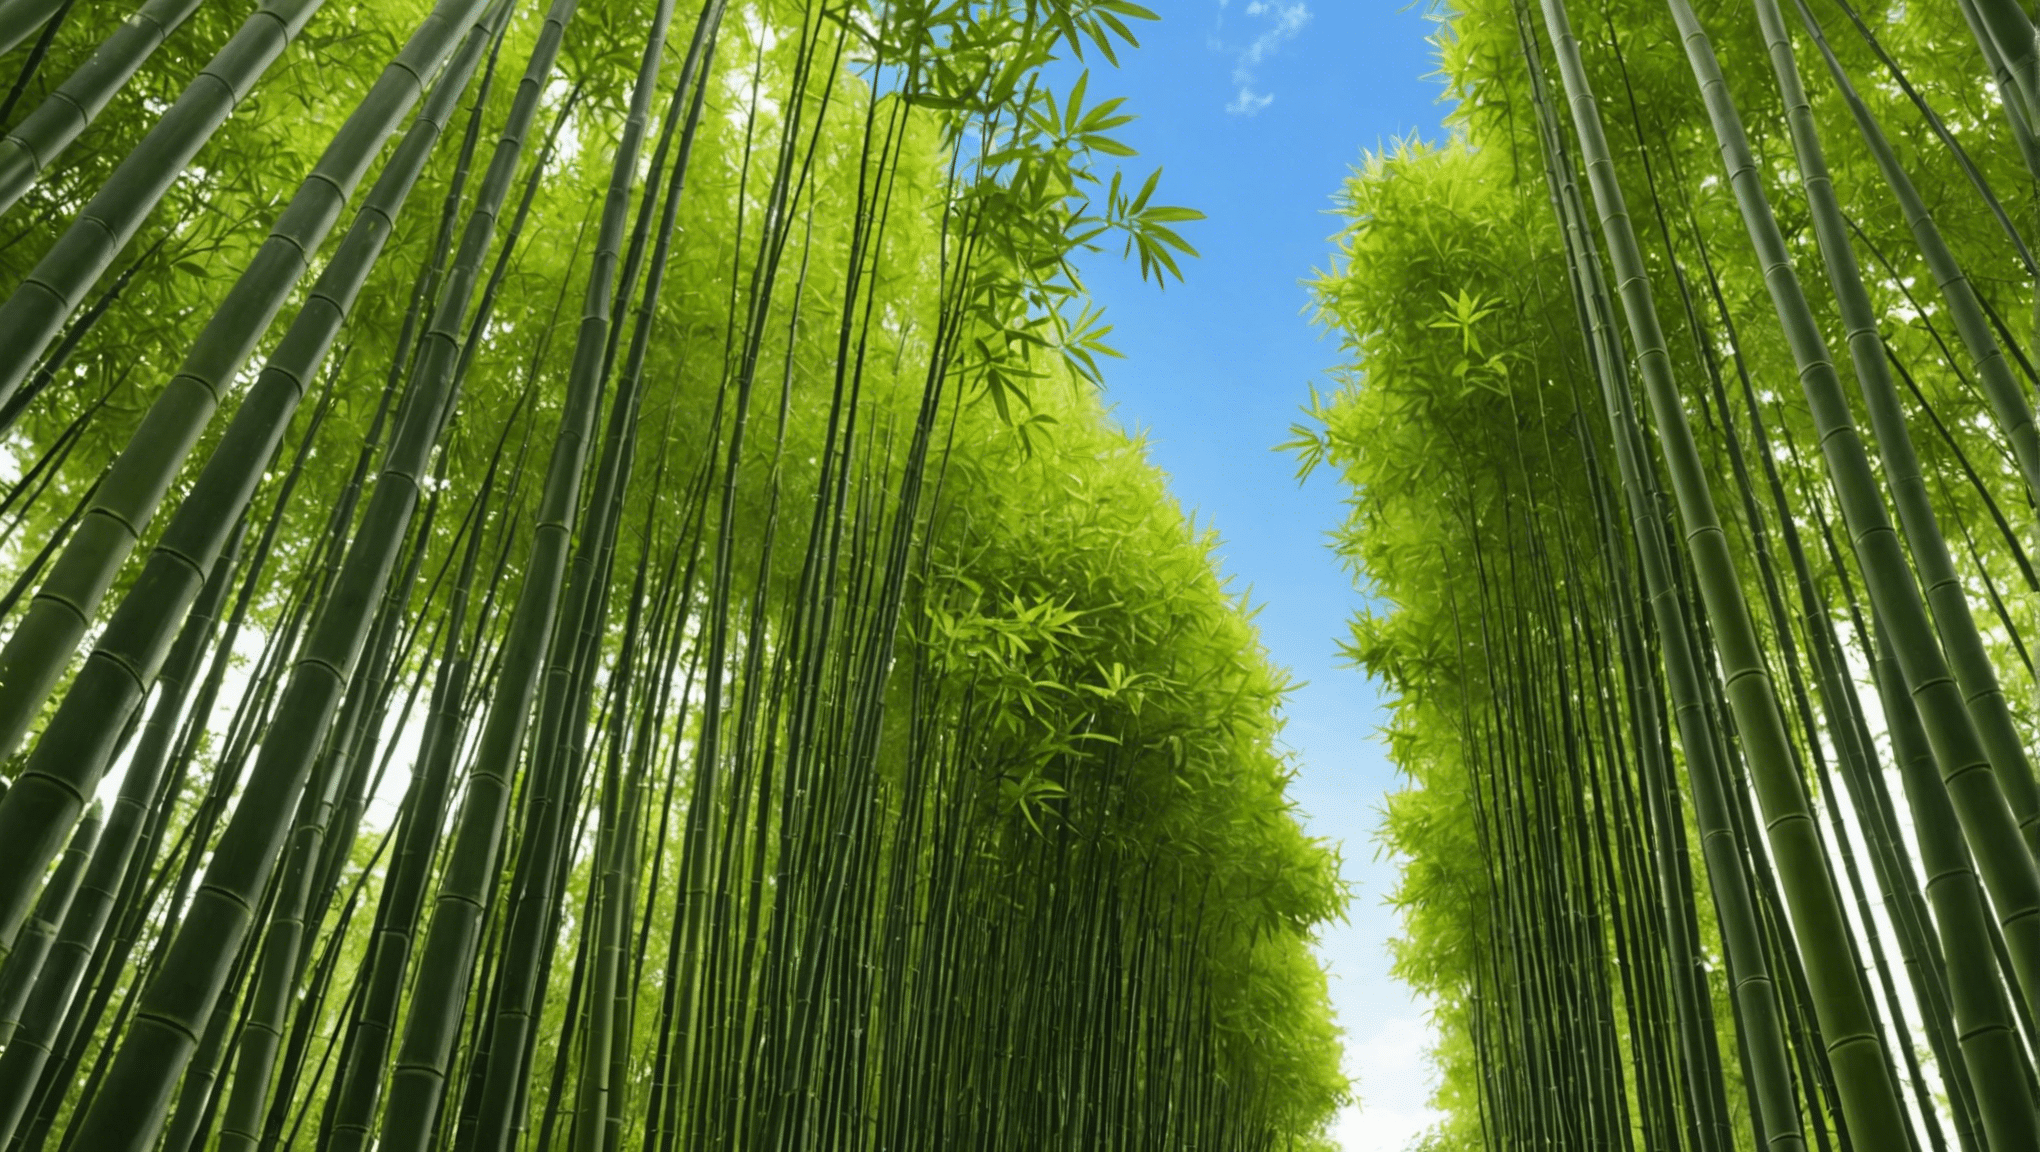 dozvědět se o roli bambusových semen při podpoře ekologické udržitelnosti a ochrany životního prostředí.